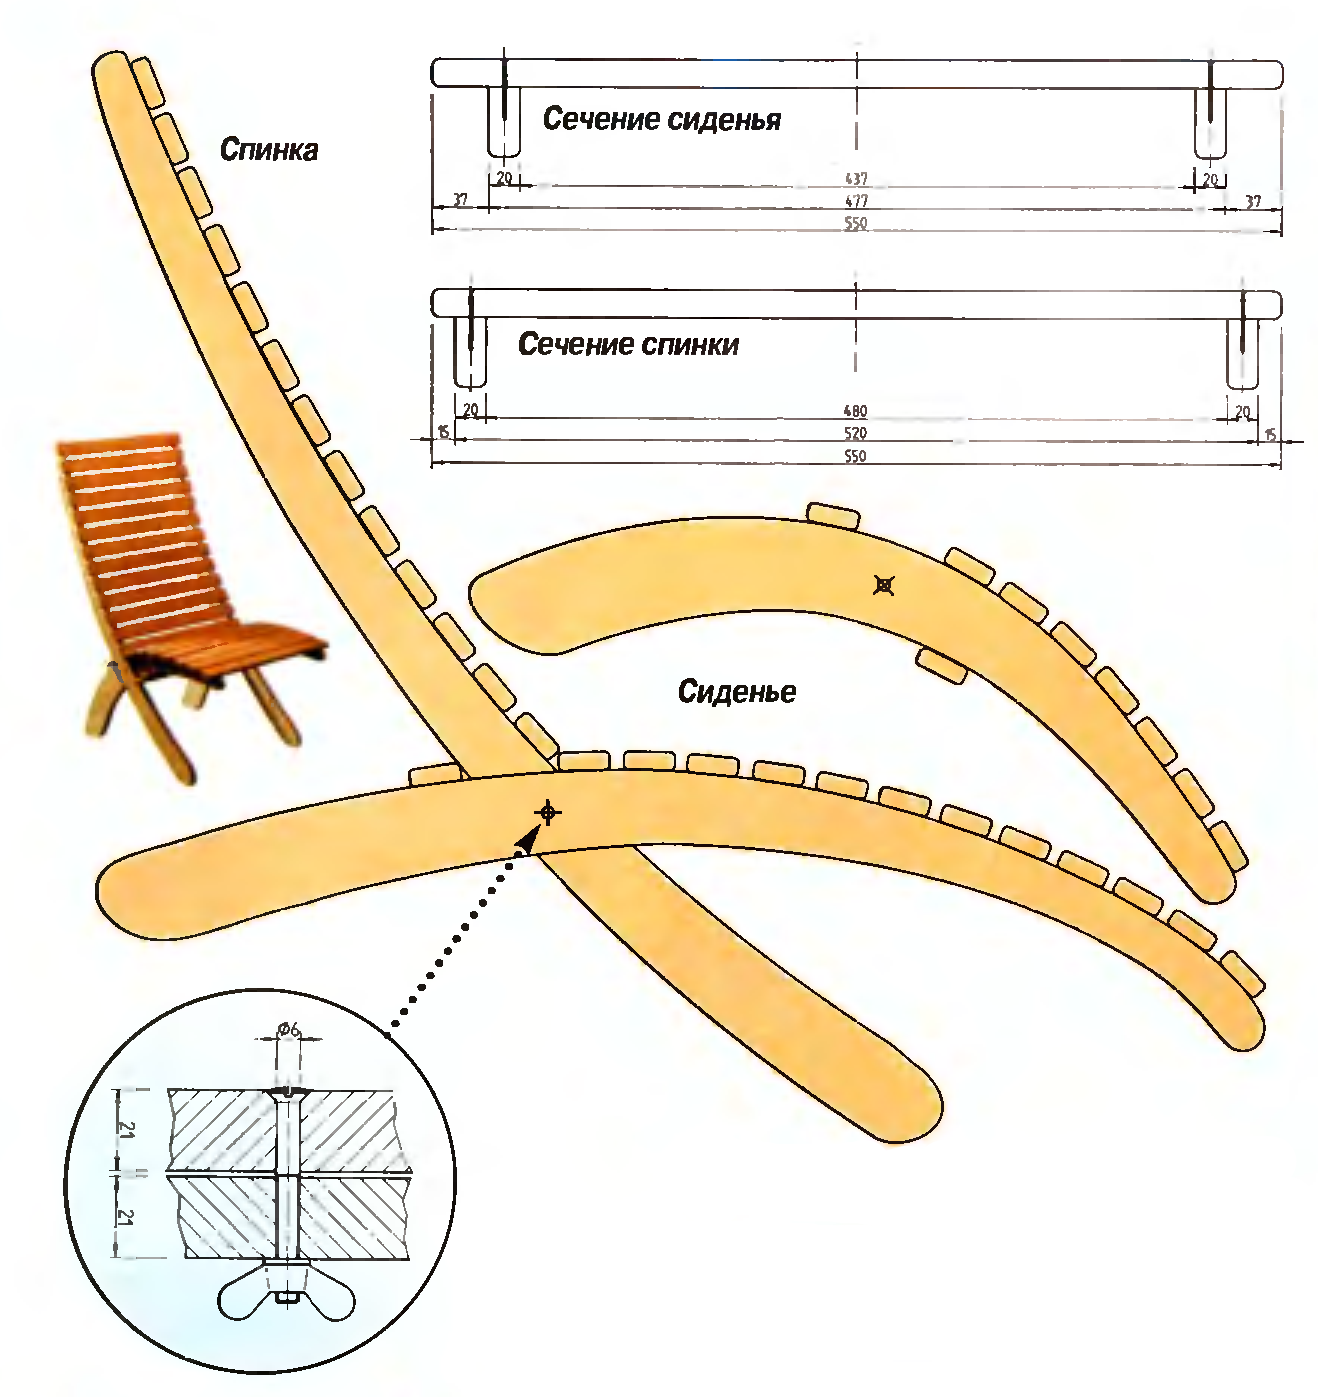 сделать складной деревянный стул своими руками